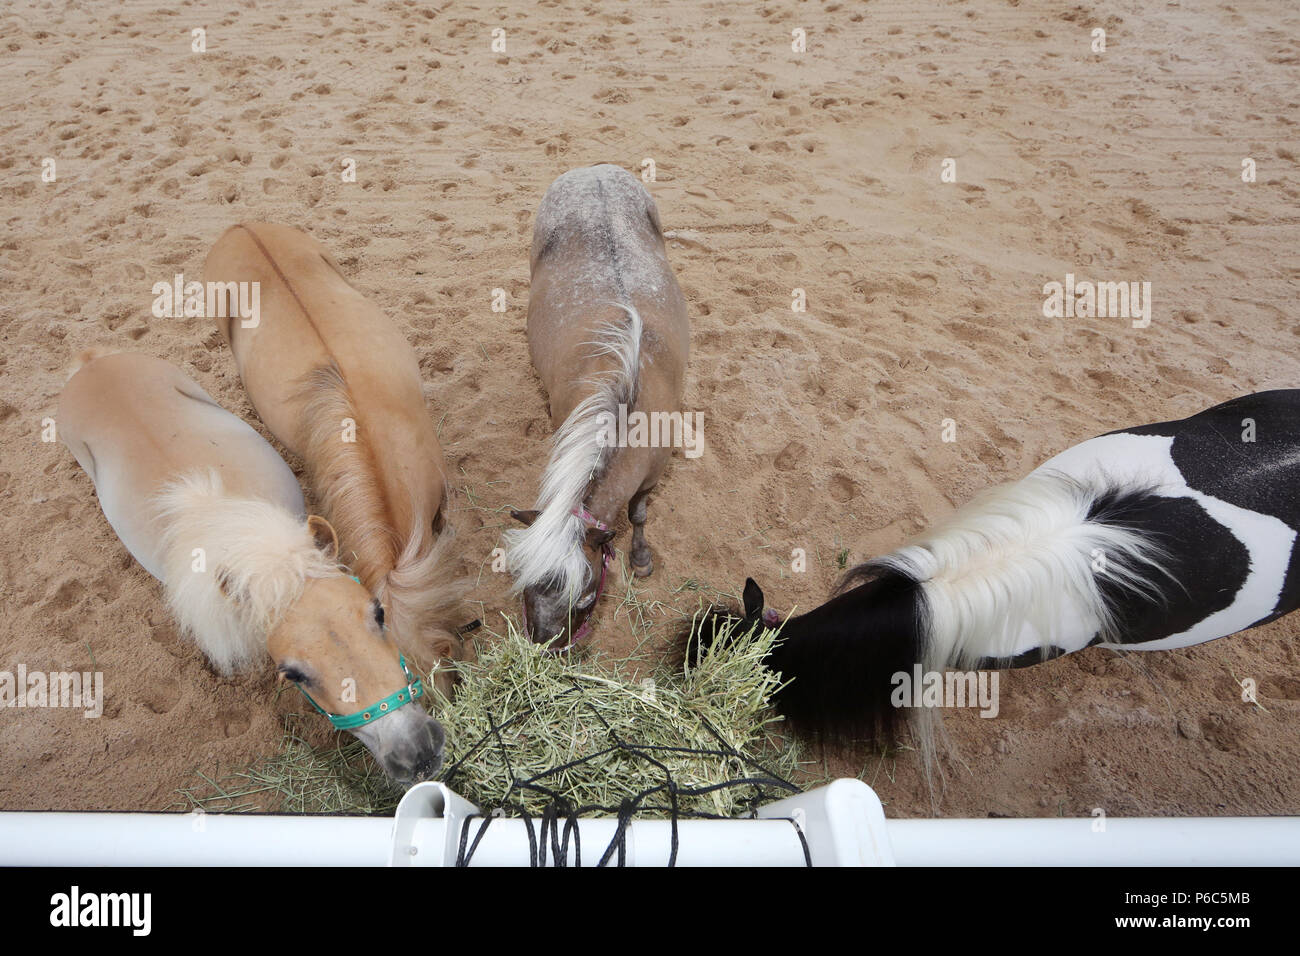 Doha, poneys, manger du foin Foin d'un bénéfice net Banque D'Images